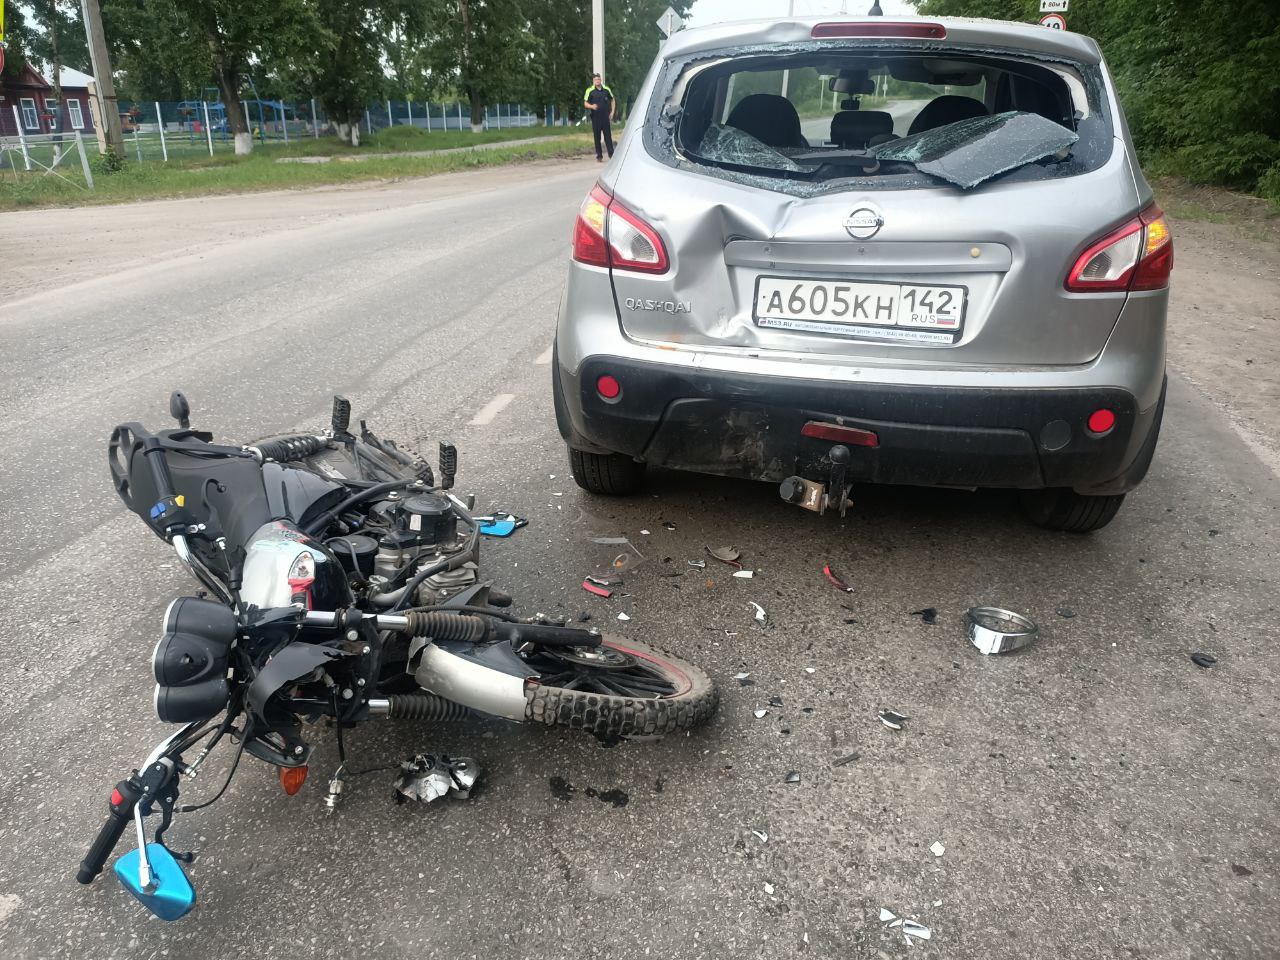 В Кузбассе два 15-летних подростка на мотоцикле и самокате попали в ДТП в один день 